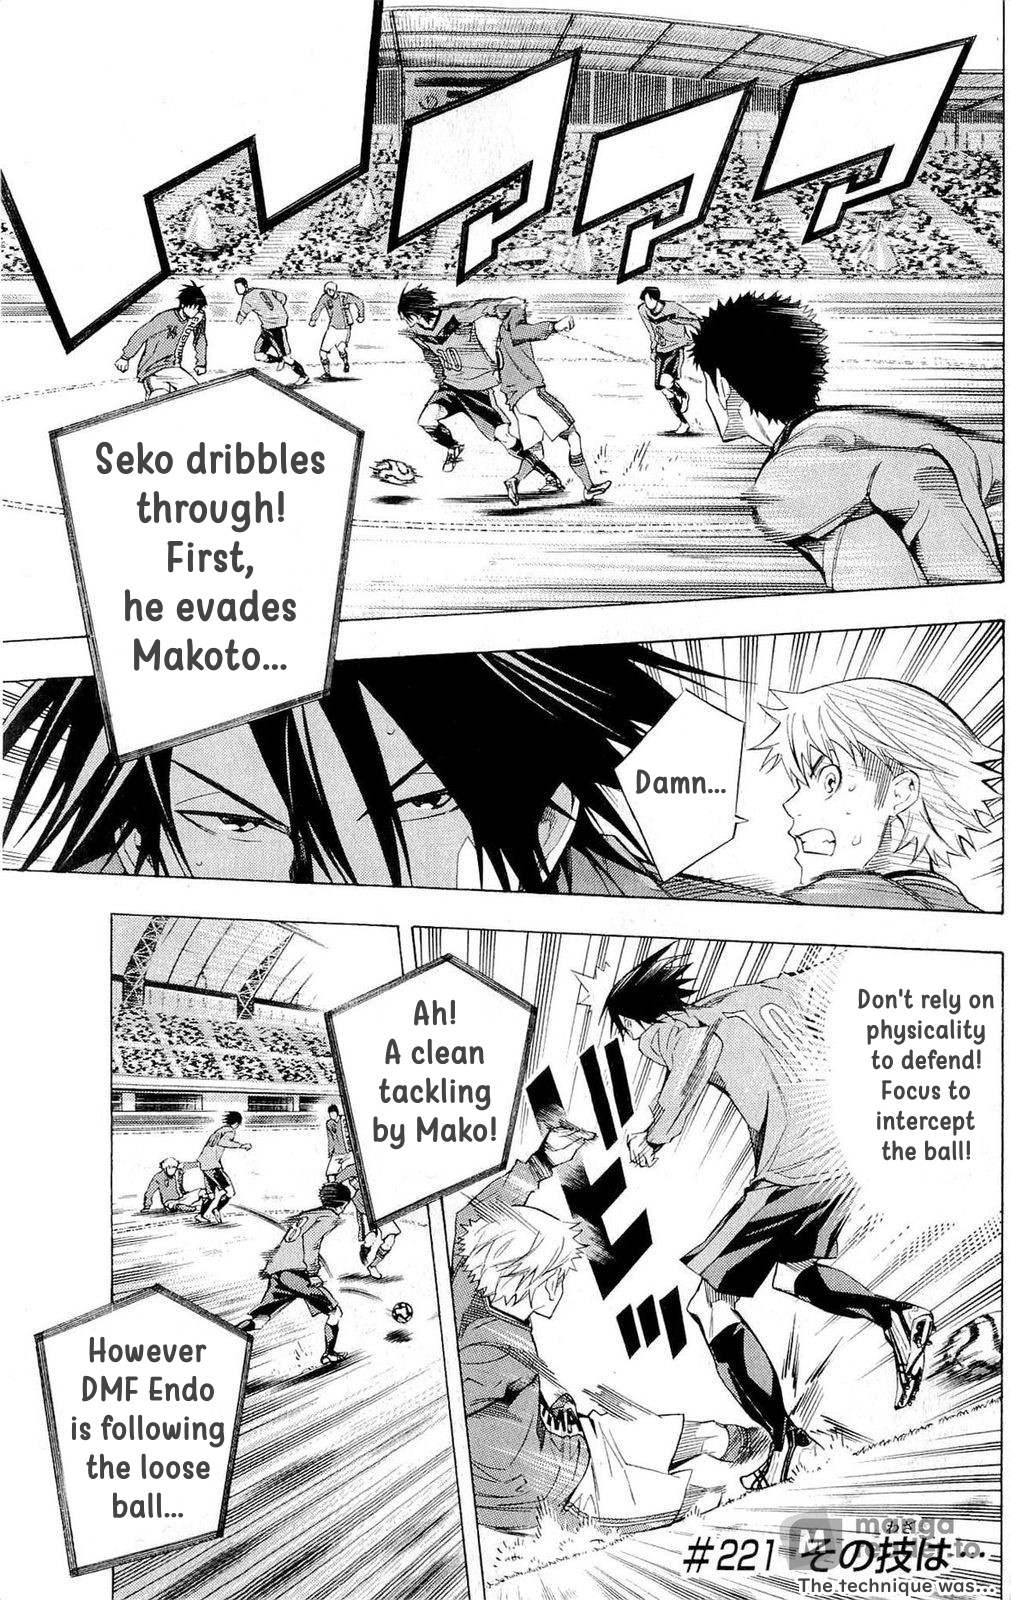 Area No Kishi - Page 1